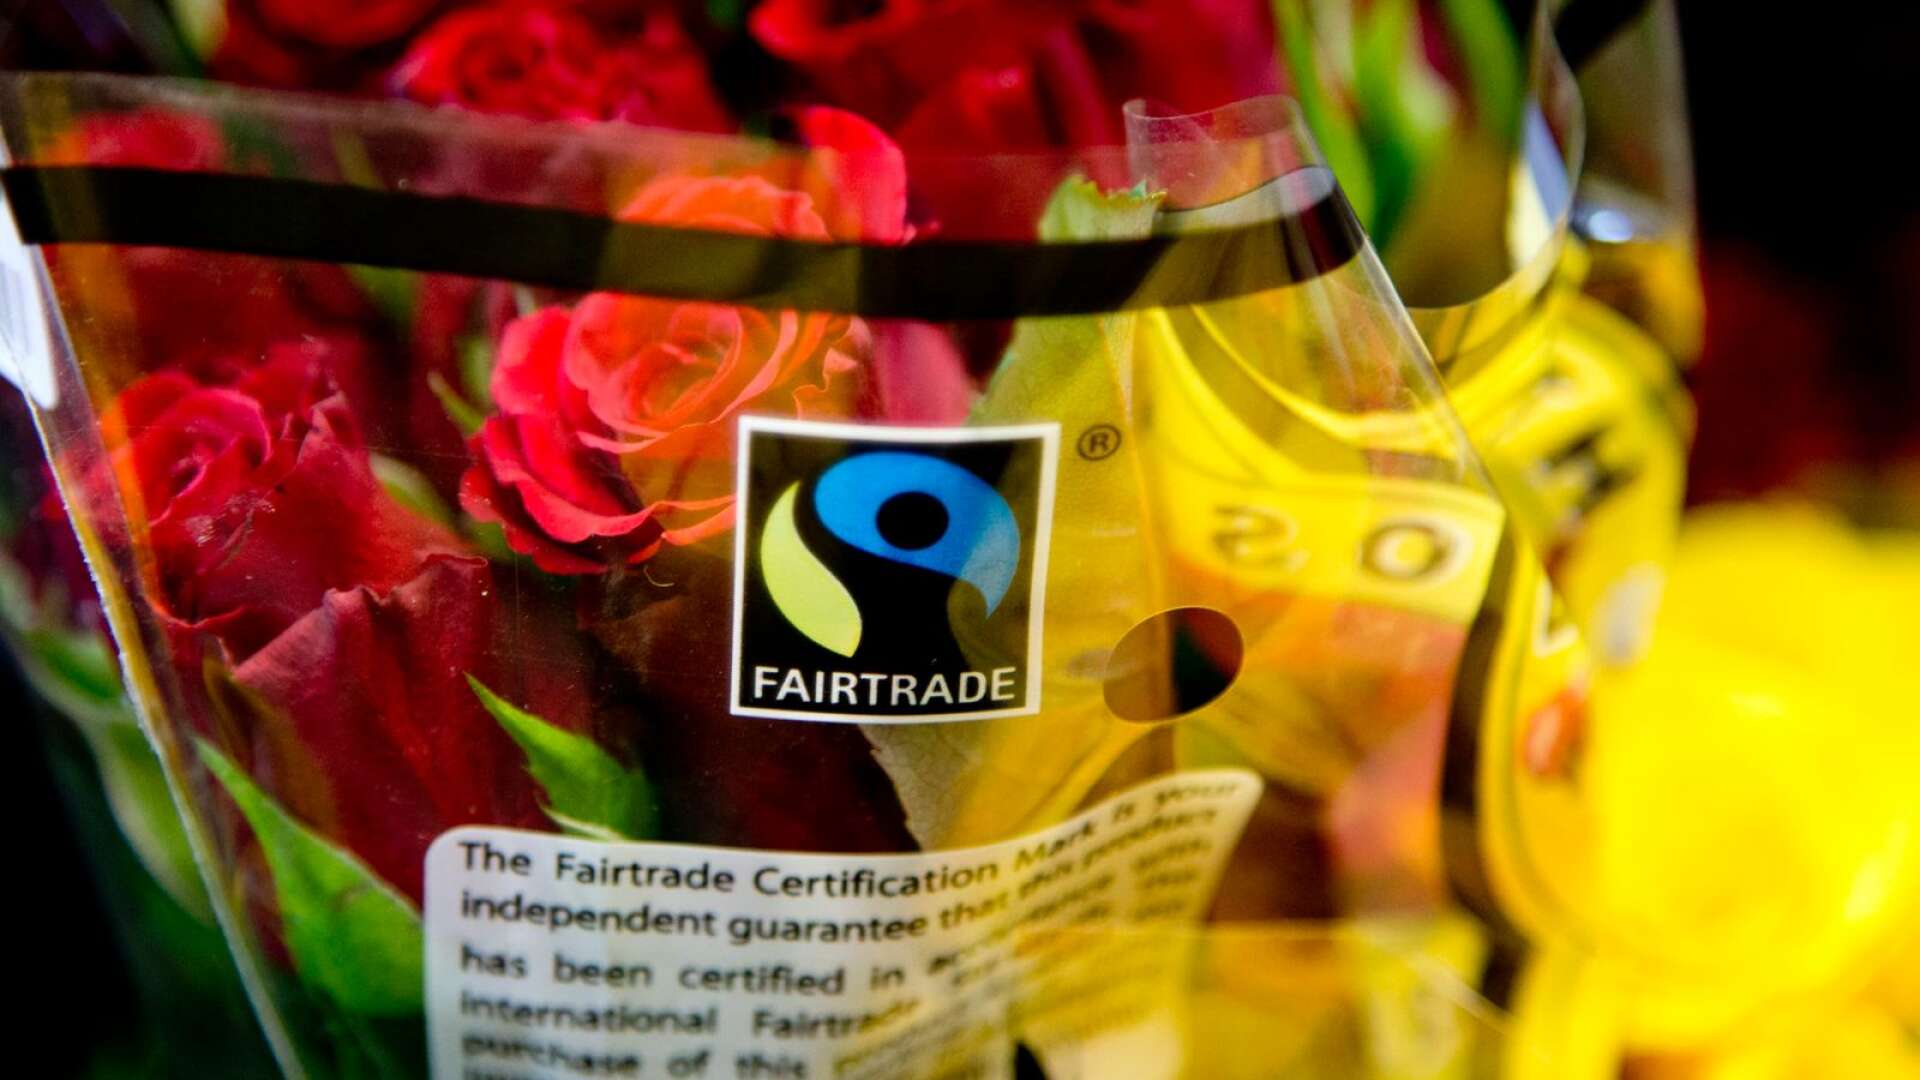 Använd oberoende tredjepartscertifieringar som Fairtrade och TCO Certified för att ställa relevanta hållbarhetskrav och få kvalitet i uppföljningen, skriver Annica Sundin, Lisa Persson och Malva Rosenfeld.